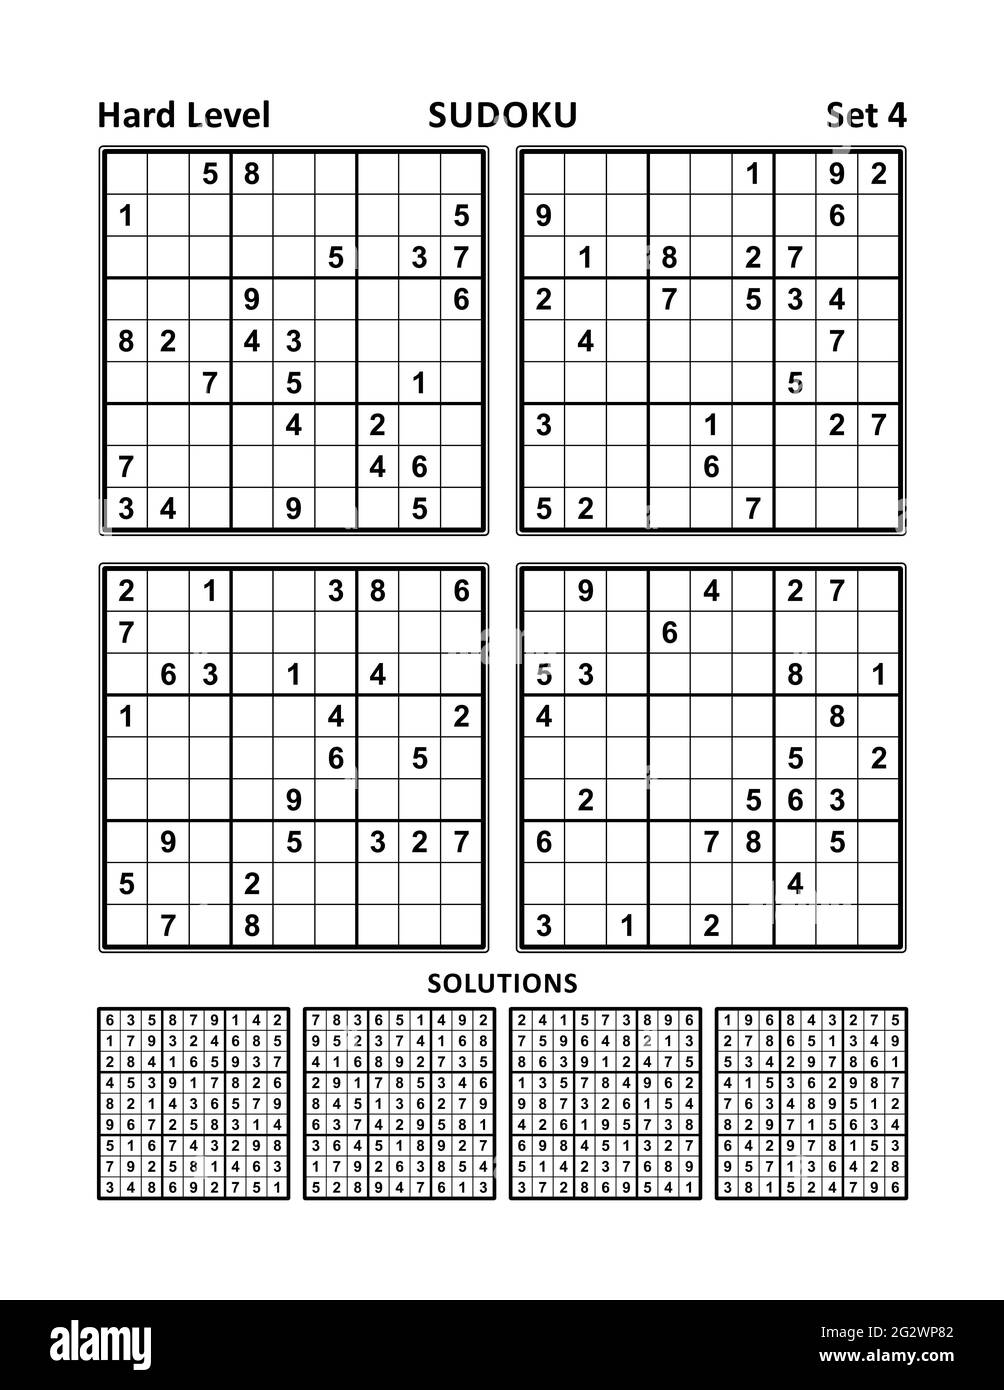 Quattro giochi sudoku di livello difficile, con risposte. Set 4. Foto Stock